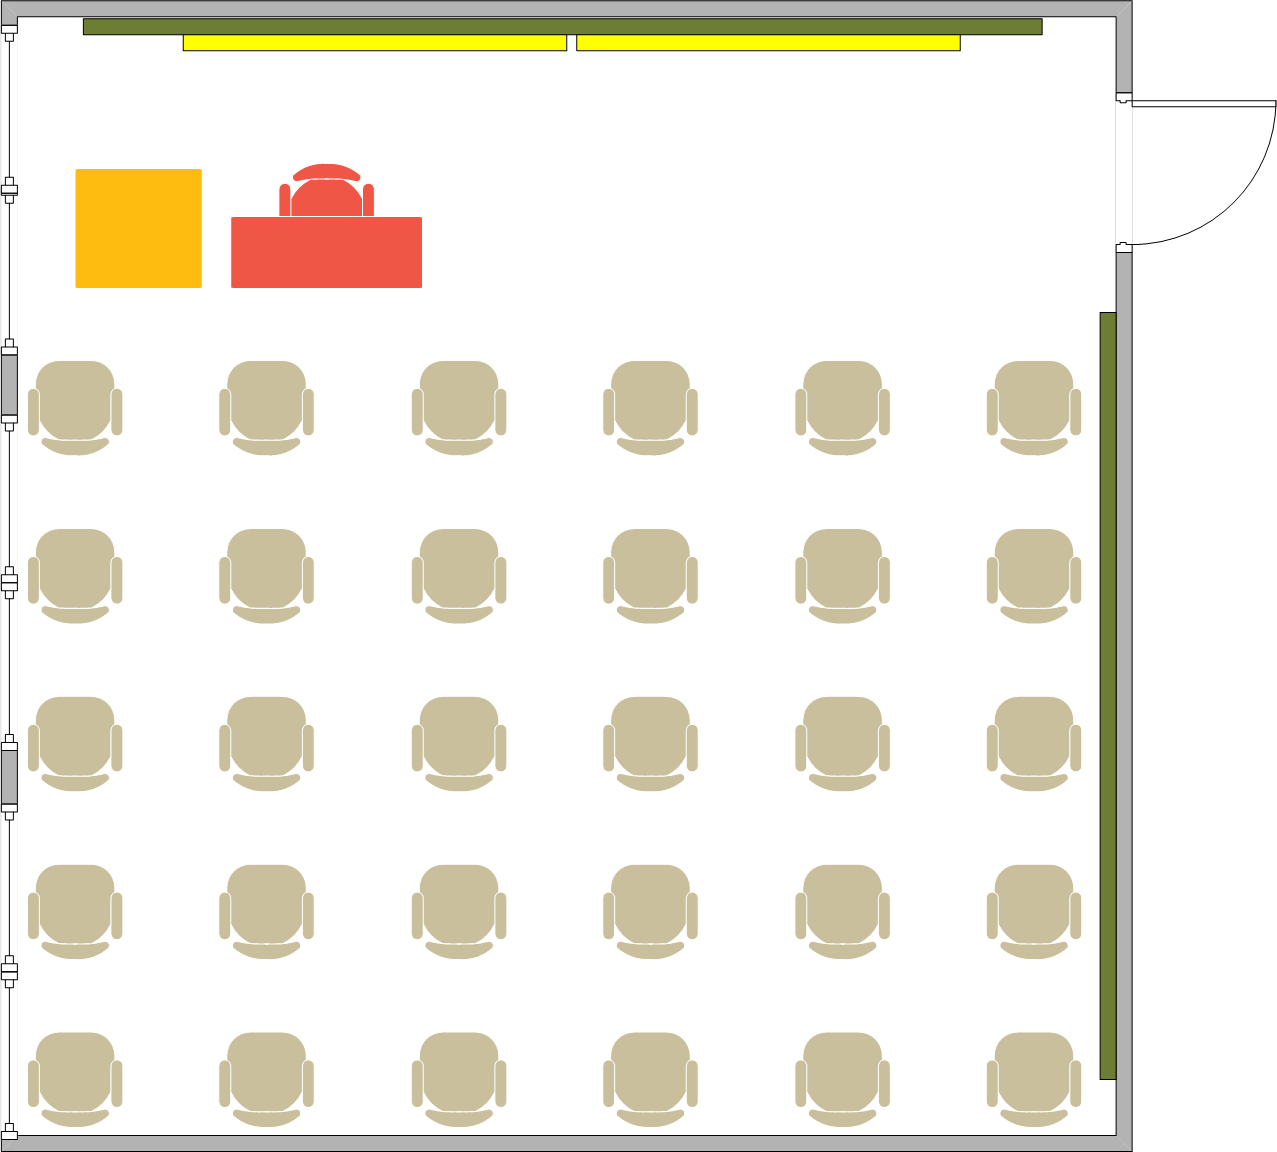 Girvetz Hall - 2115 Seating Chart